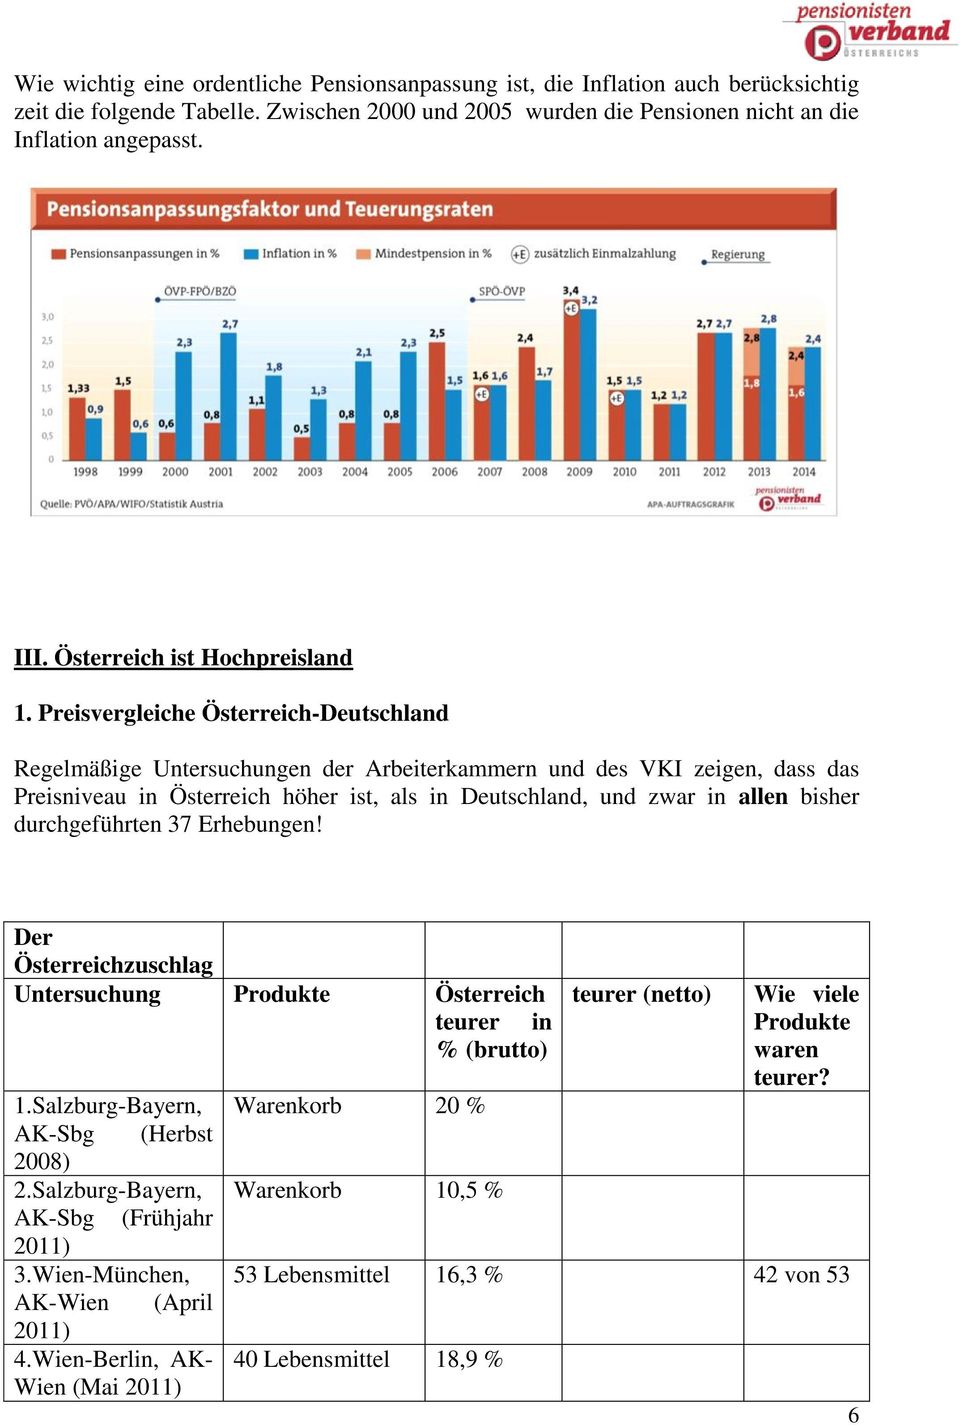 Preisvergleiche Österreich-Deutschland Regelmäßige Untersuchungen der Arbeiterkammern und des VKI zeigen, dass das Preisniveau in Österreich höher ist, als in Deutschland, und zwar in allen bisher